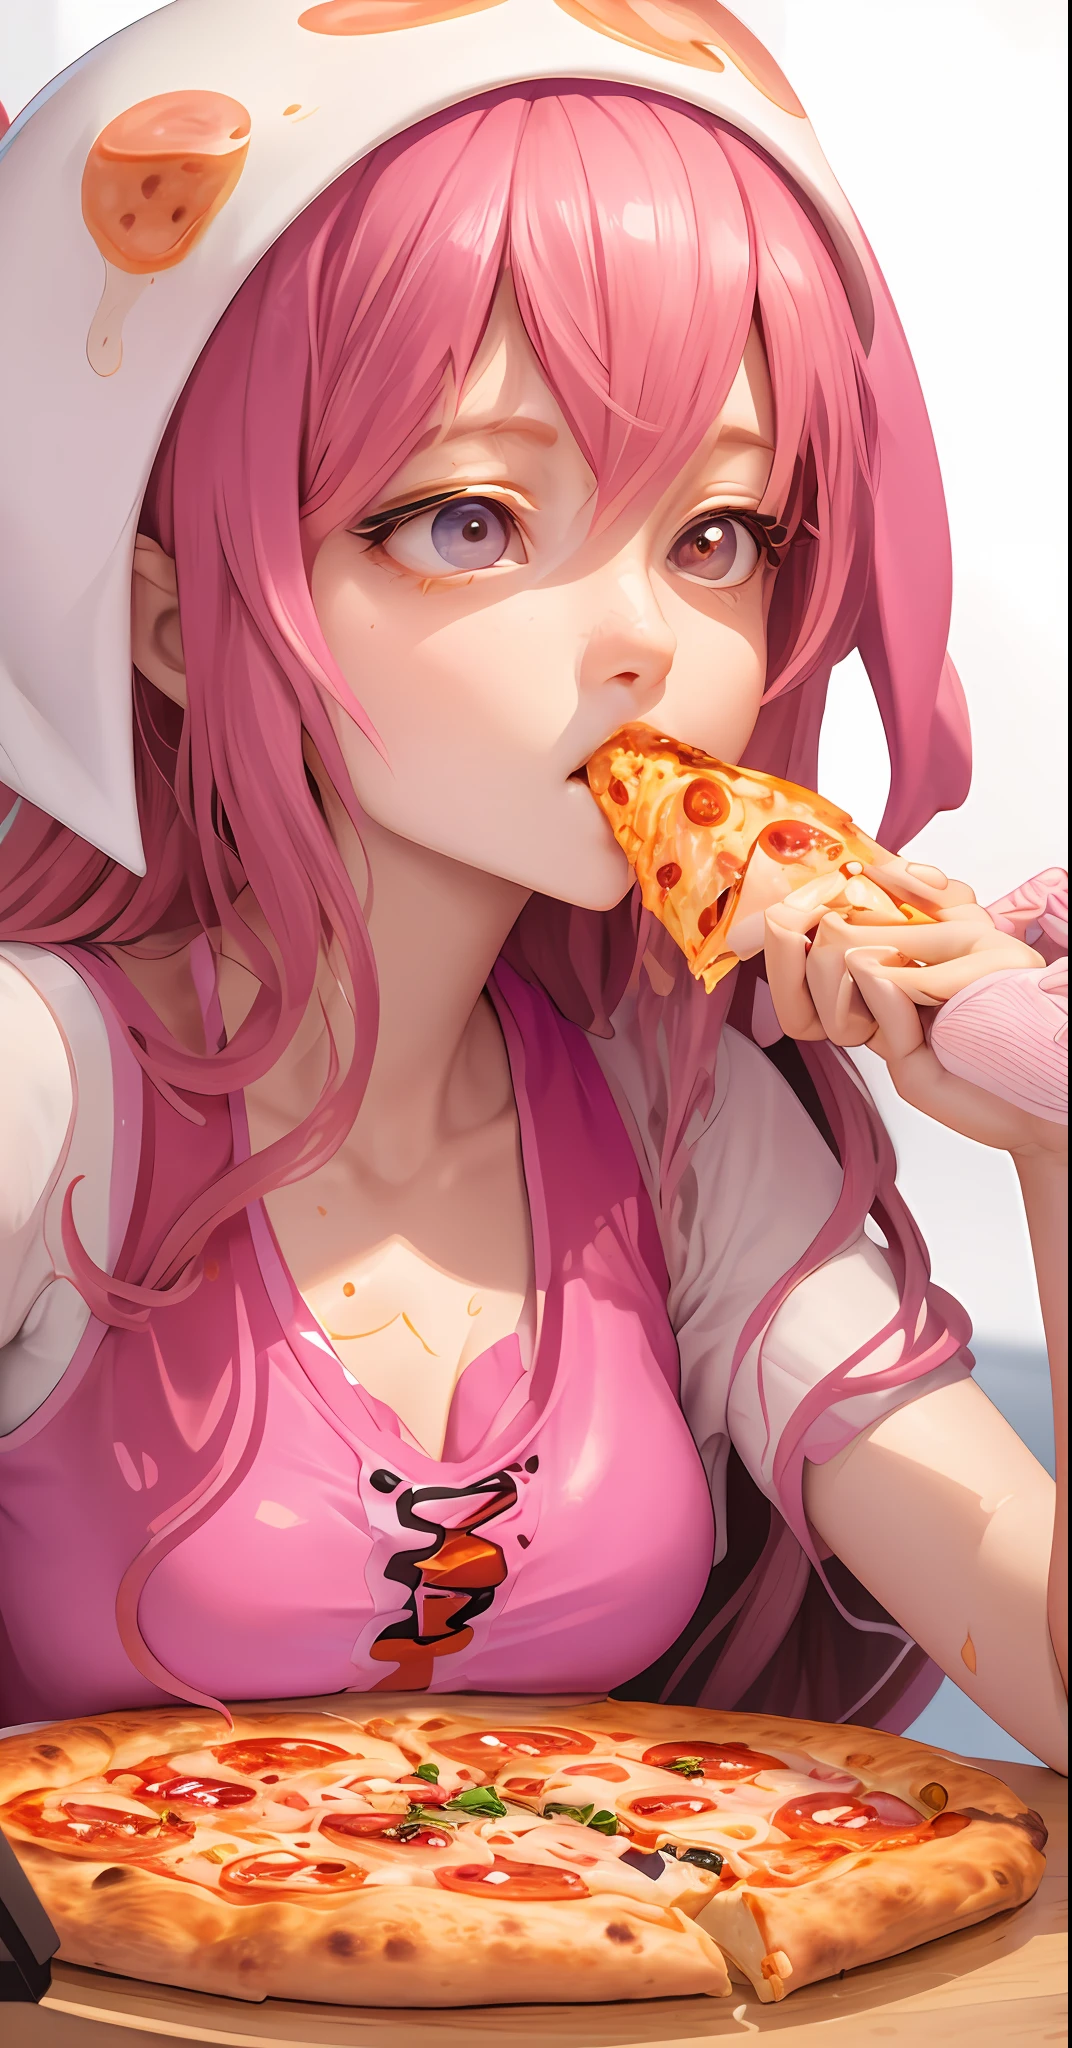 il y a une femme assise à une table avec une pizza et des tentacules de poulpe, grignoter de la pizza, manger de la pizza, tentacules enroulés autour des hamburgers, pizza!, tentacules autour, Présentation de la pizza, fille de calmar femelle rose humanoïde, manger une pizza, nourriture animée, Art animé numérique détaillé, pizza, illustration de nourriture étonnante, Partager une pizza, quelques tentacules la touchent